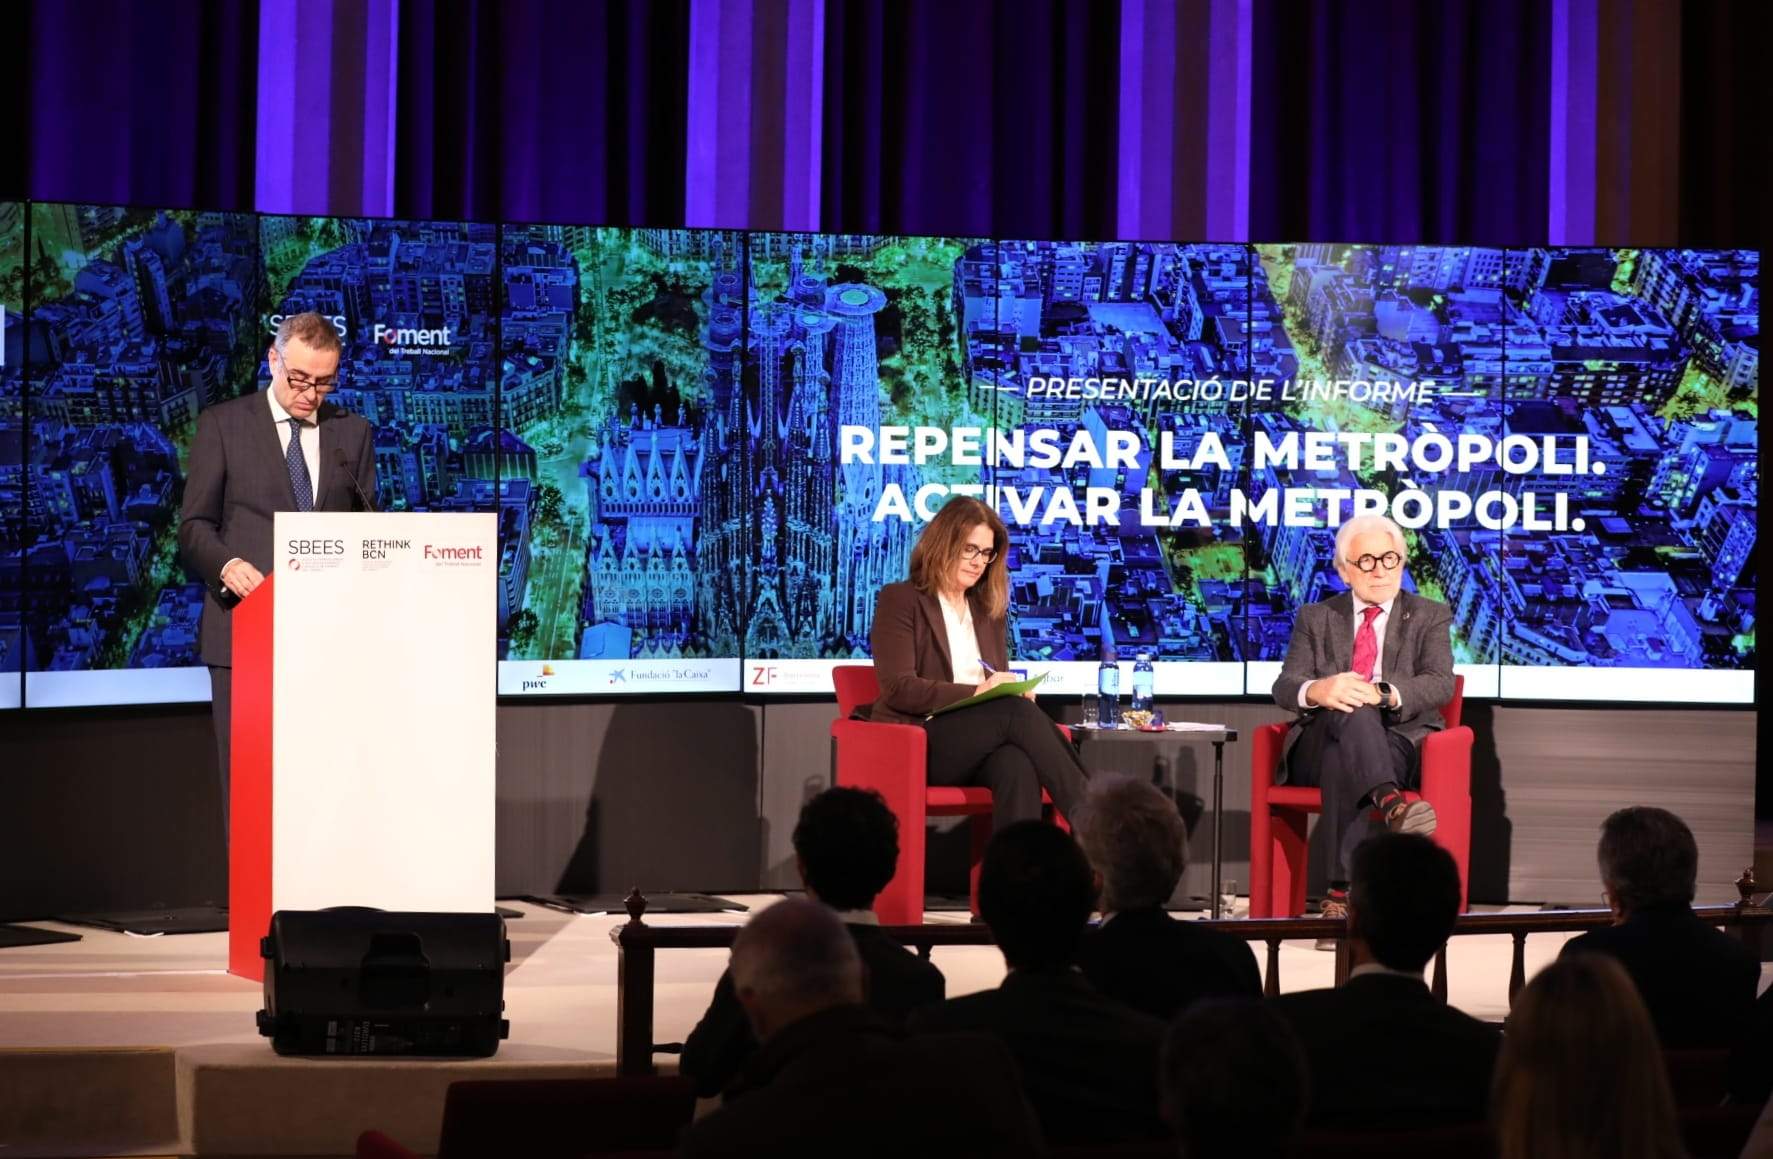 Tres reptes per a l’impuls metropolità: la ciutat intel·ligent, el canvi climàtic i les desigualtats socials